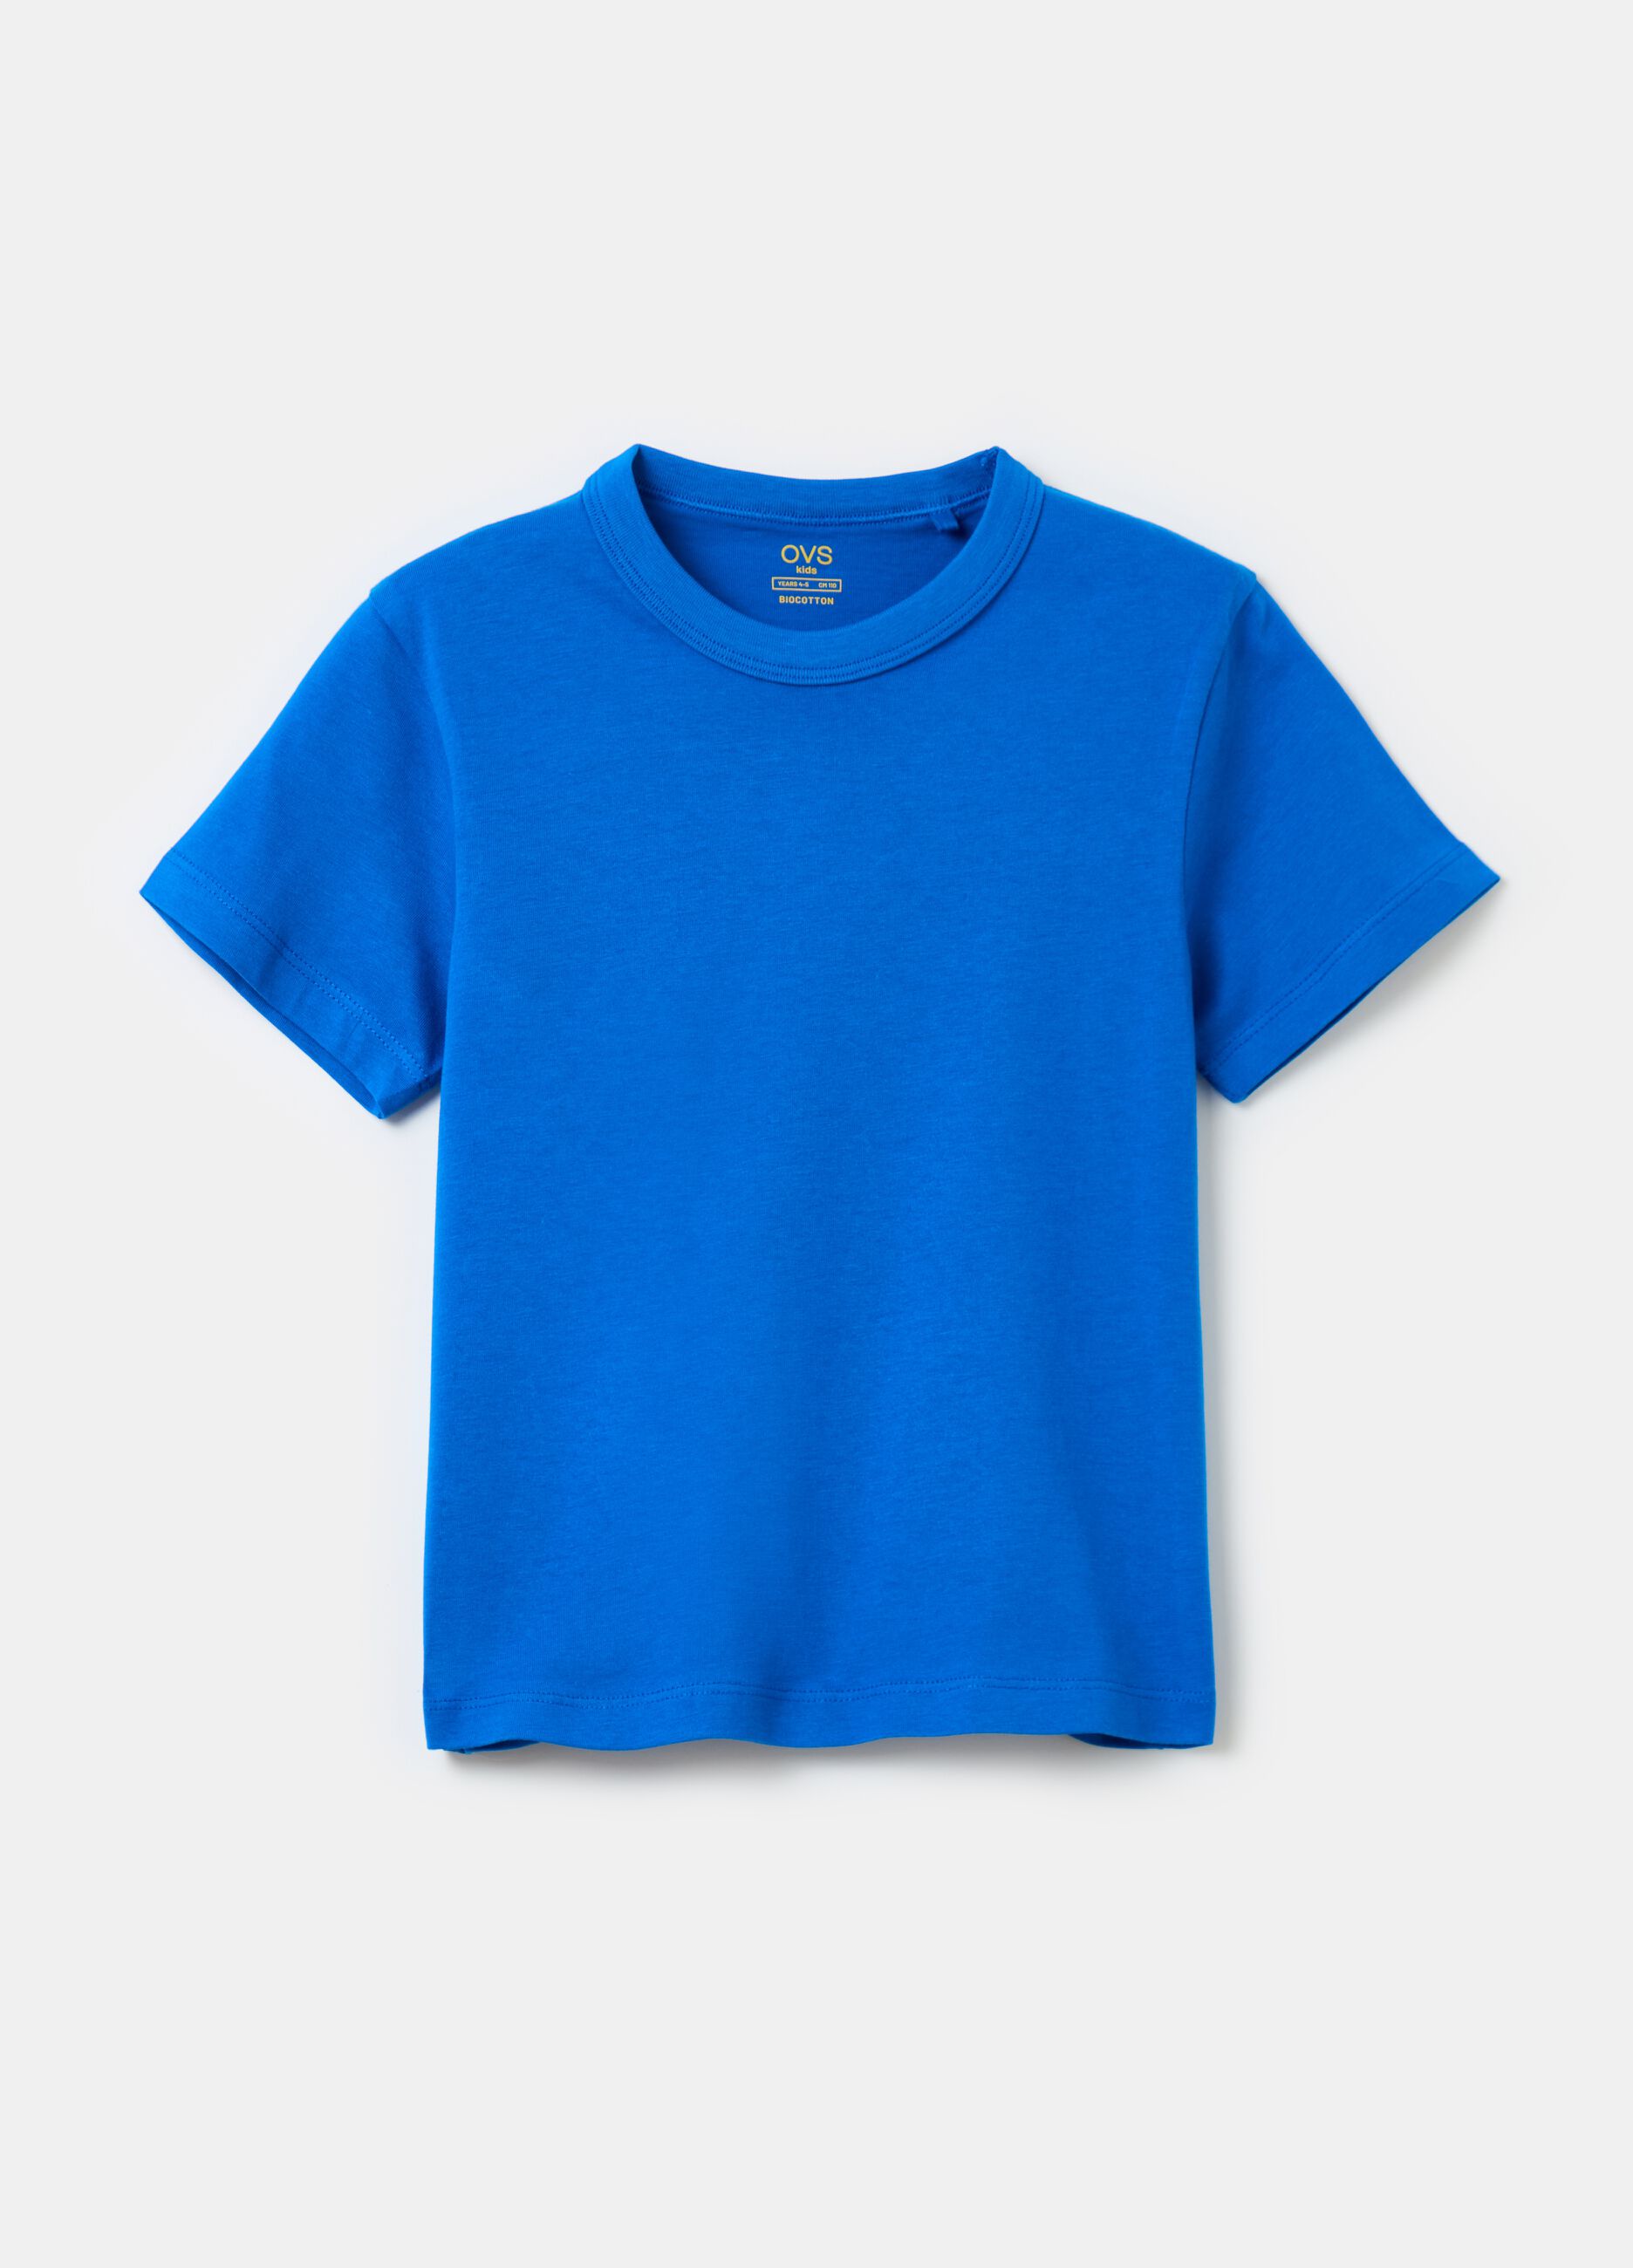 

детские голубые футболки Ovs для мальчиков 2005931 8-9л, Голубой